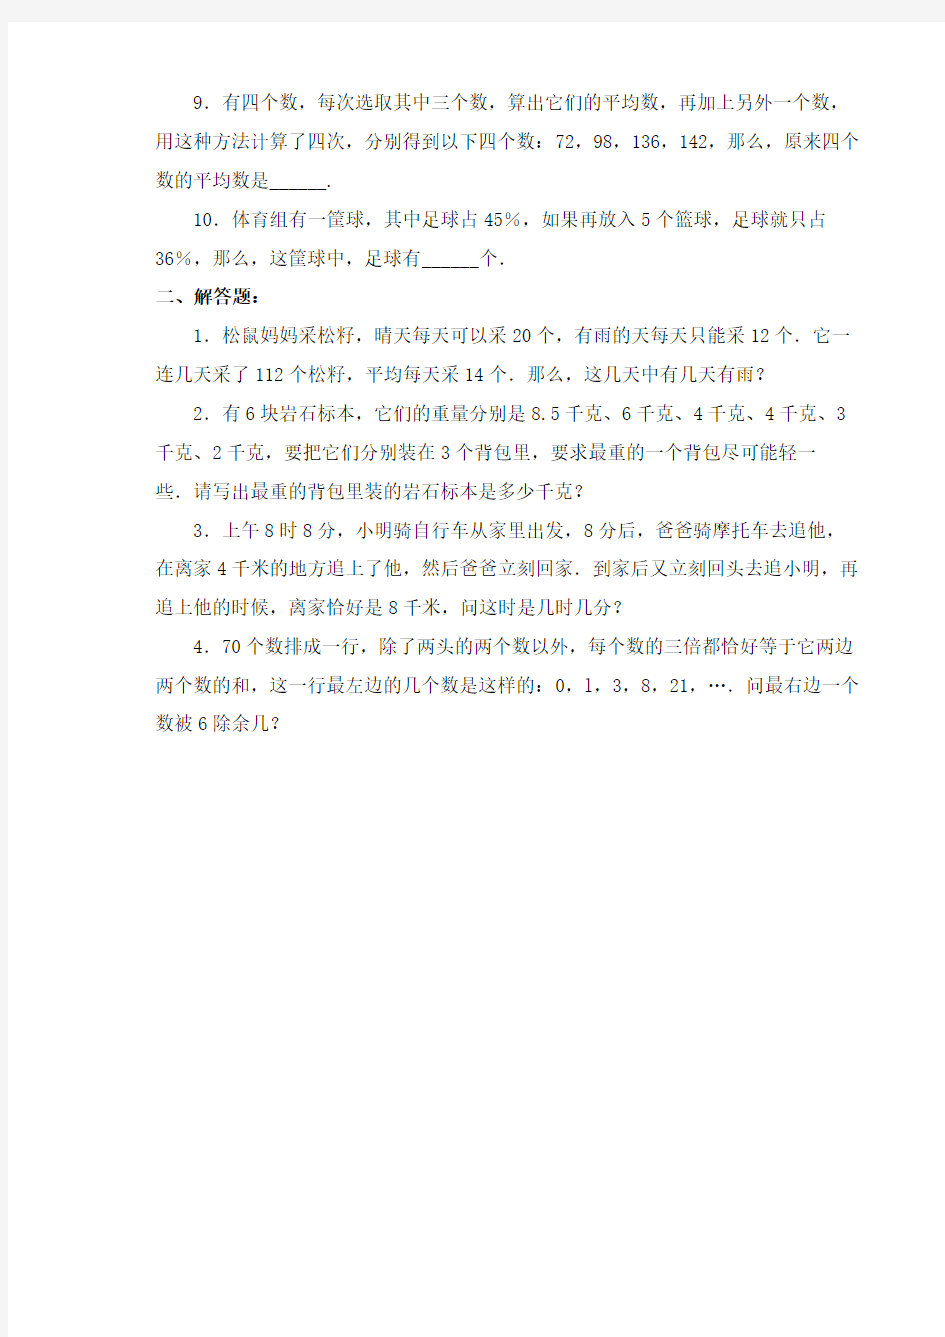 2019年北京市小升初数学综合模拟试卷(10套卷)(31-40)及答案详细解析